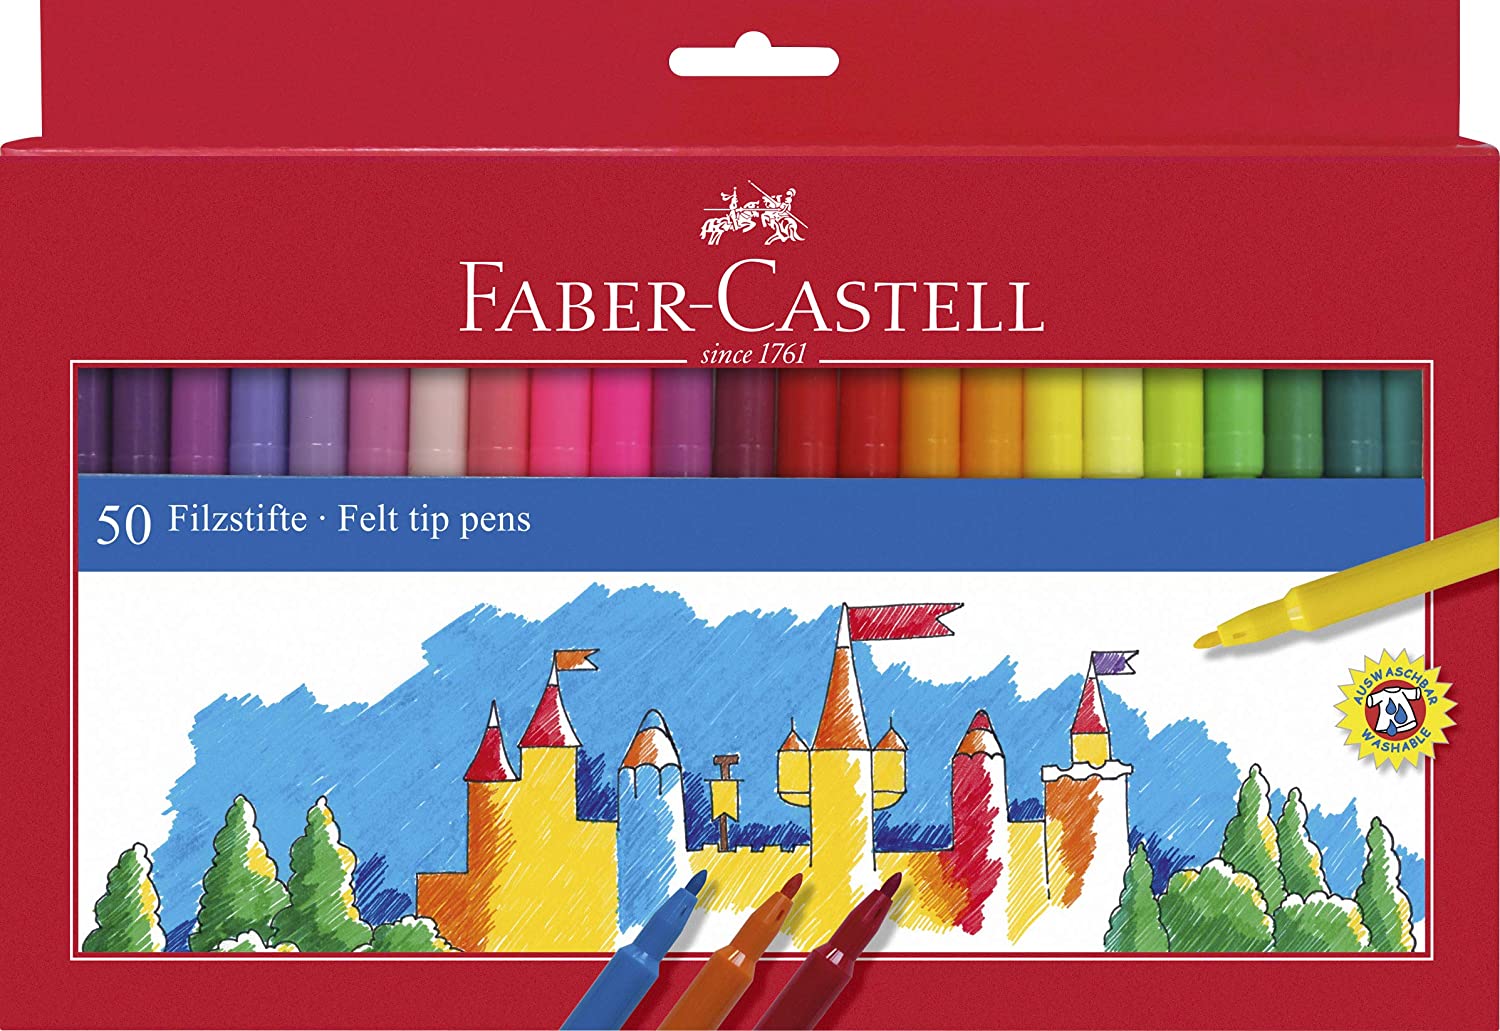 Faber-Castell 554250 Pennarello, 50 Pezzi